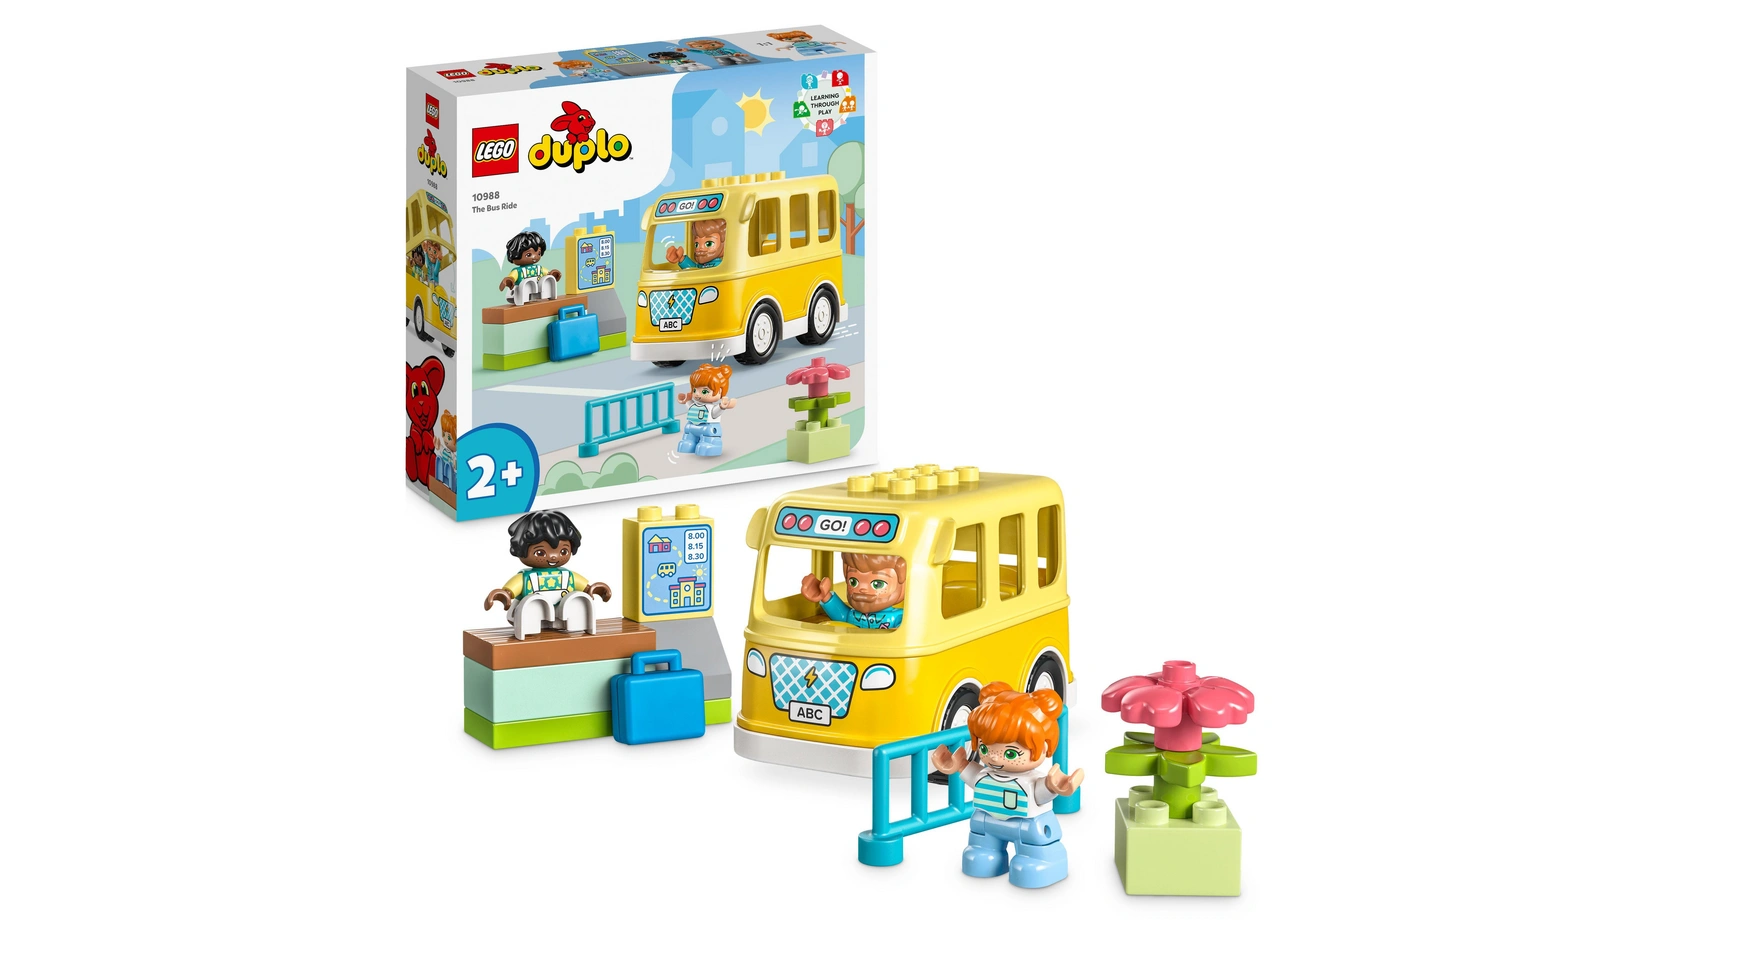 Lego DUPLO Поездка на автобусе, развивающая игрушка с игрушечным автобусом lego duplo town обучающая игрушка грузовик abc с игрушечным грузовиком